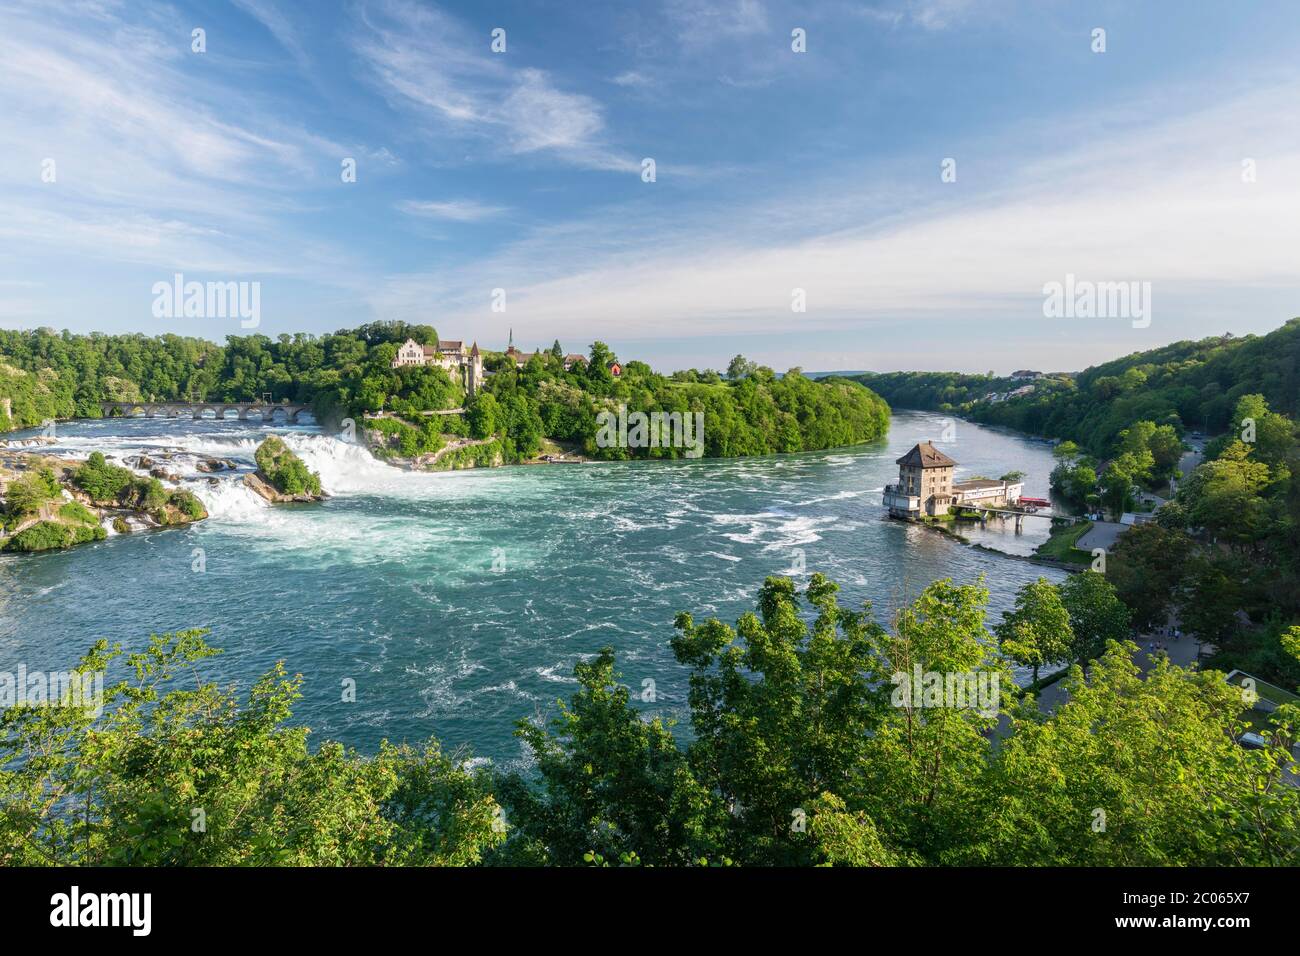 Rhine Falls with Laufen Castle and Schloessli Woerth, near Schaffhausen, Canton Schaffhausen, Switzerland Stock Photo